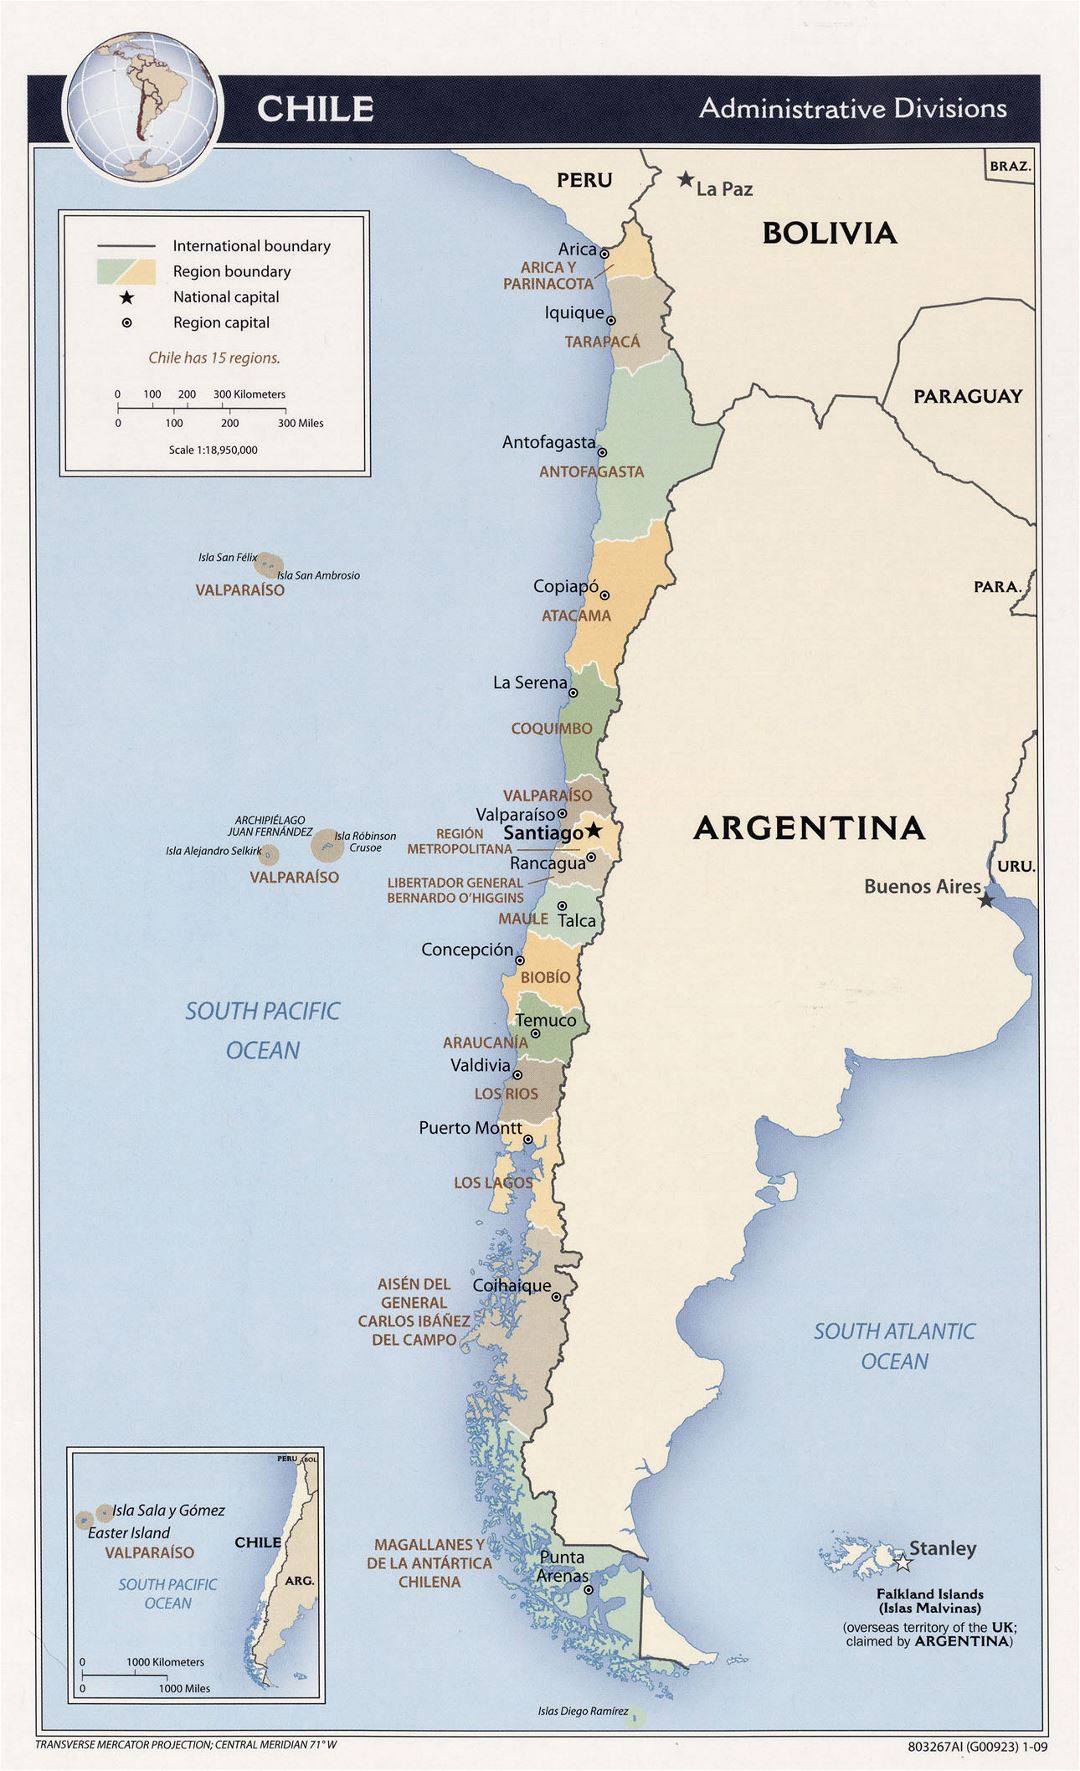 Детальная карта административных делений Чили - 2009